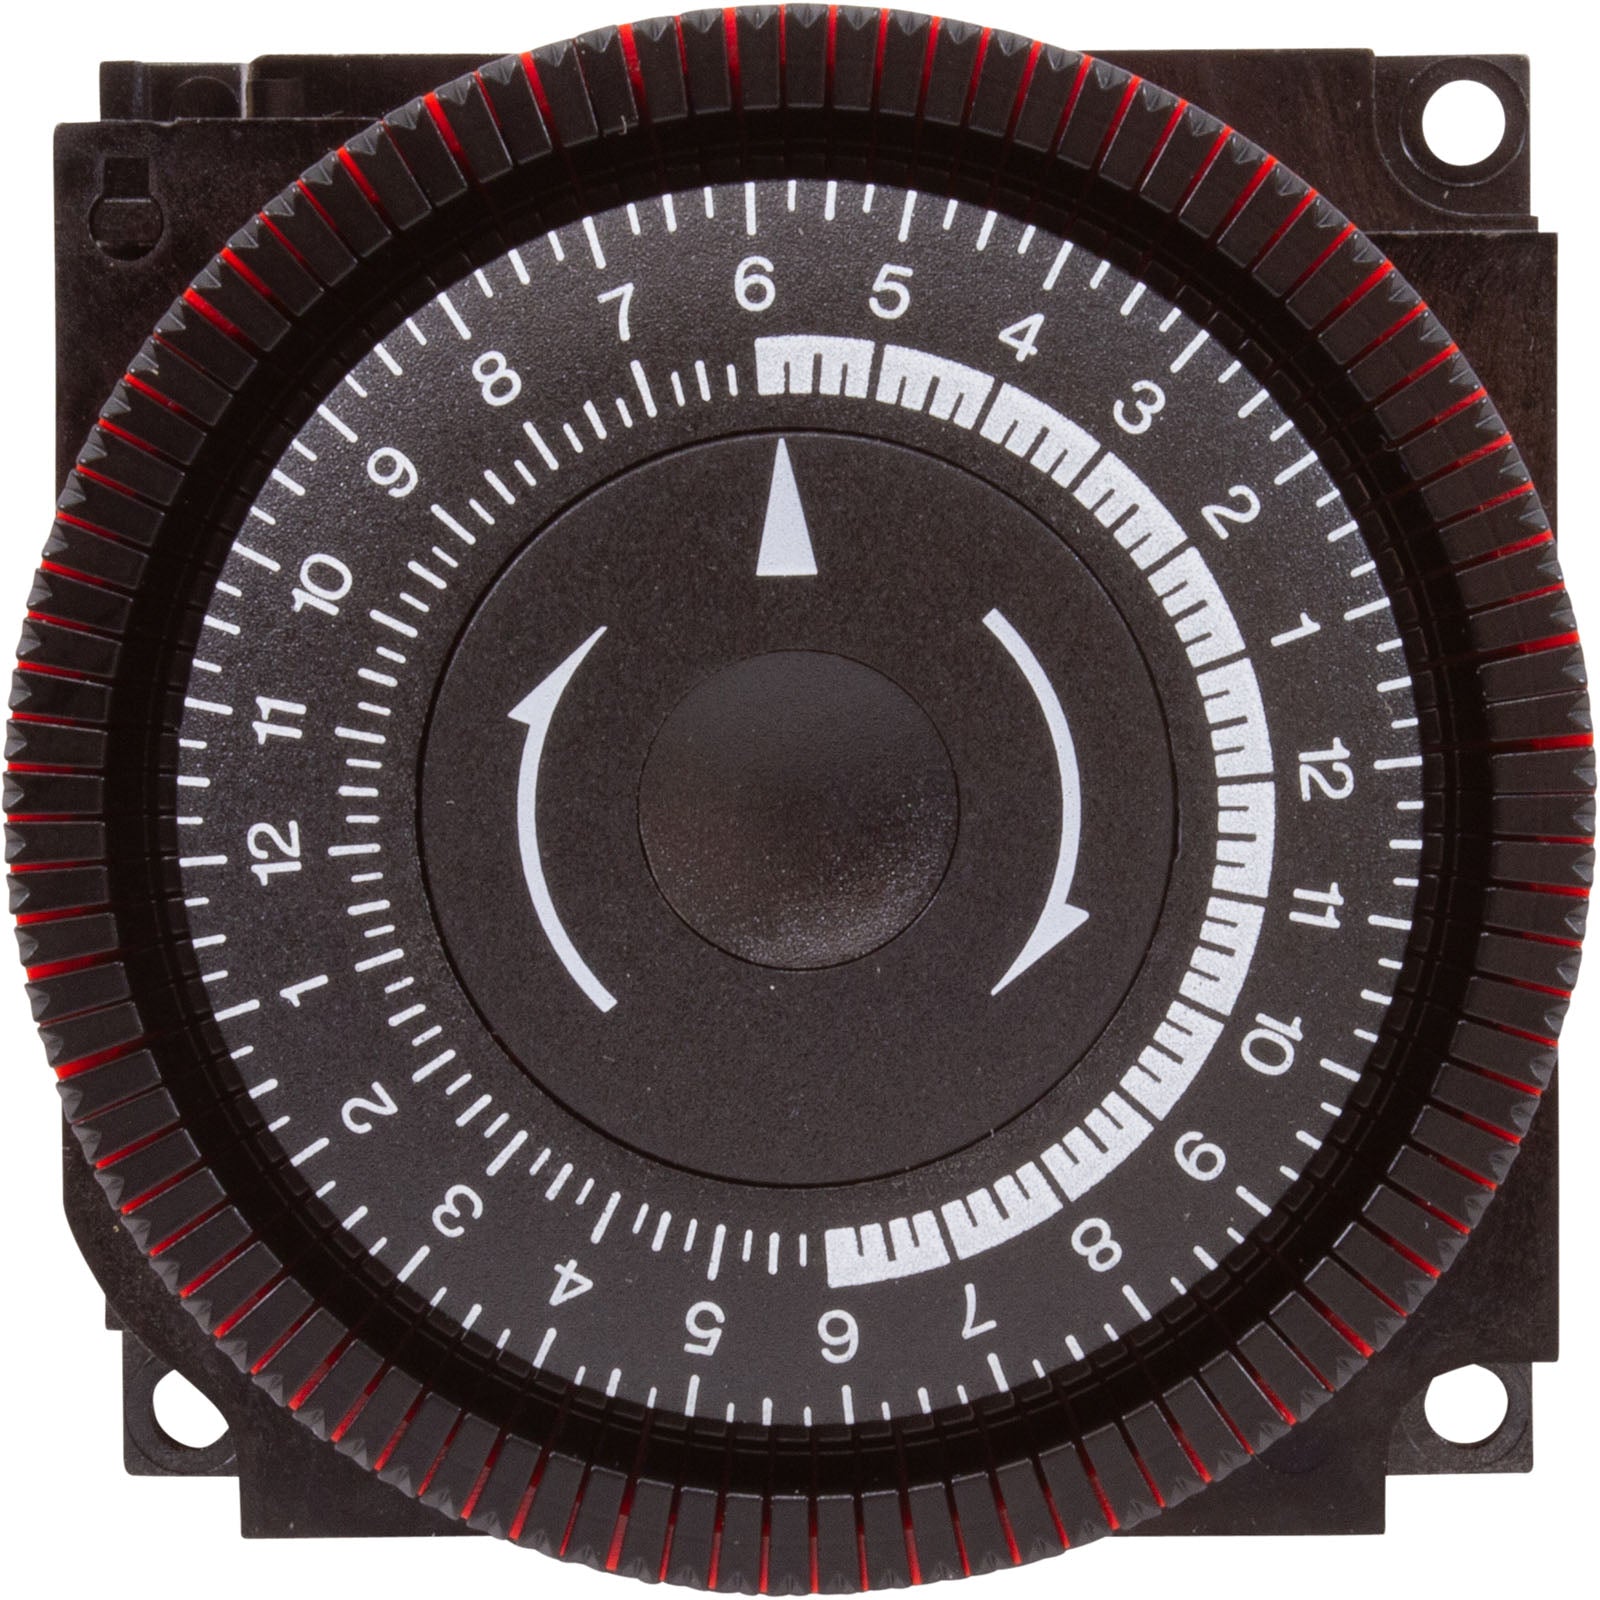 Borg General Controls Diehl 24 Hour 24V SPDT Timer (TA4067)